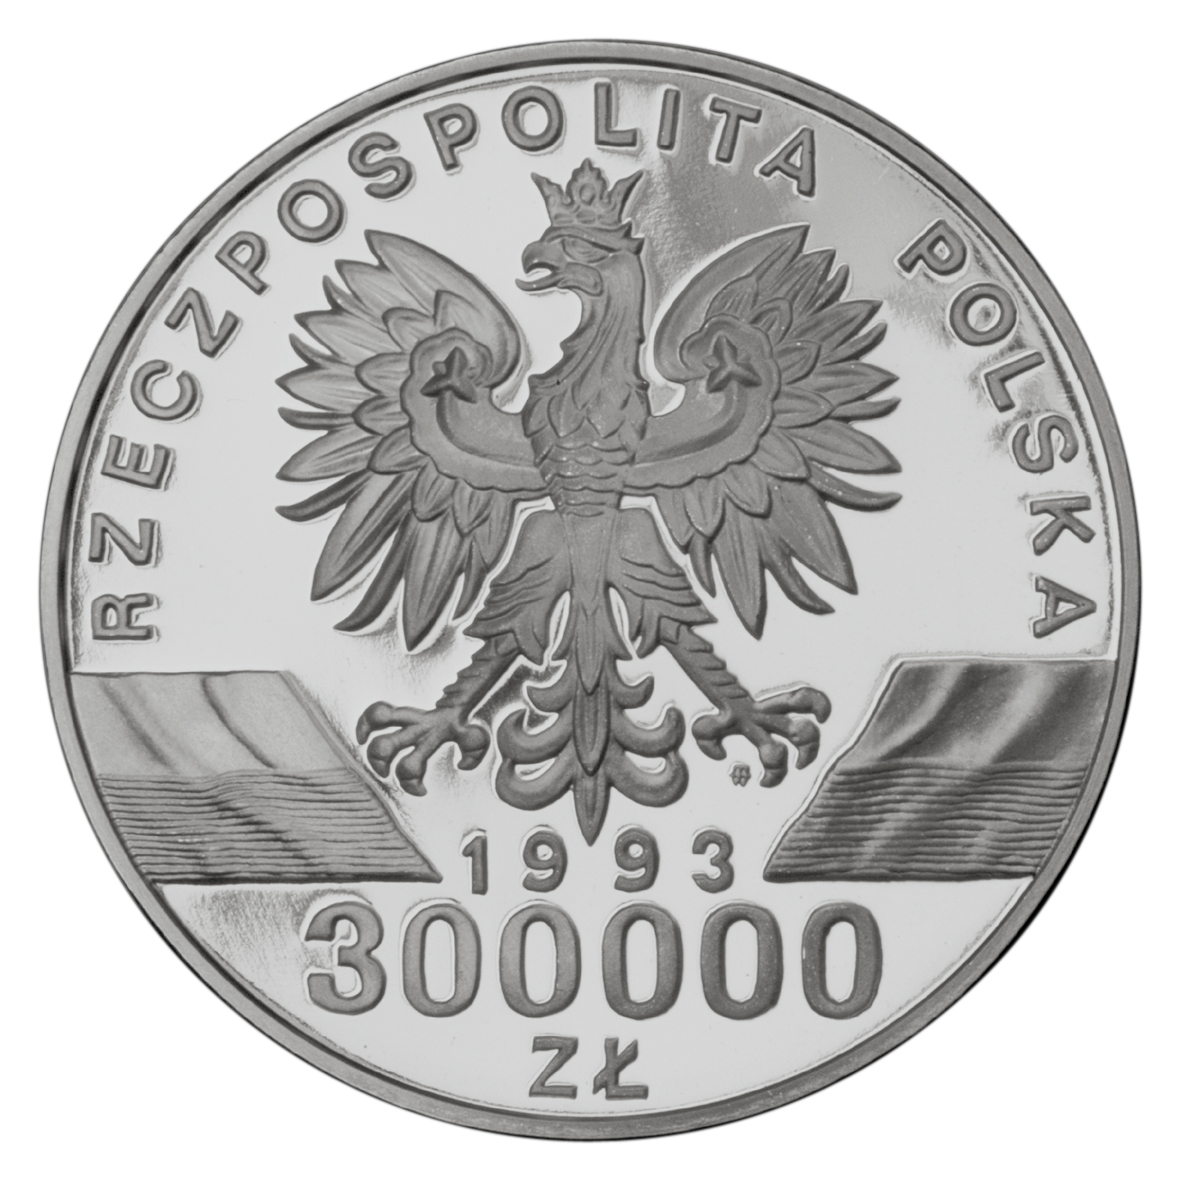 300000zl-jaskolka-awers-monety